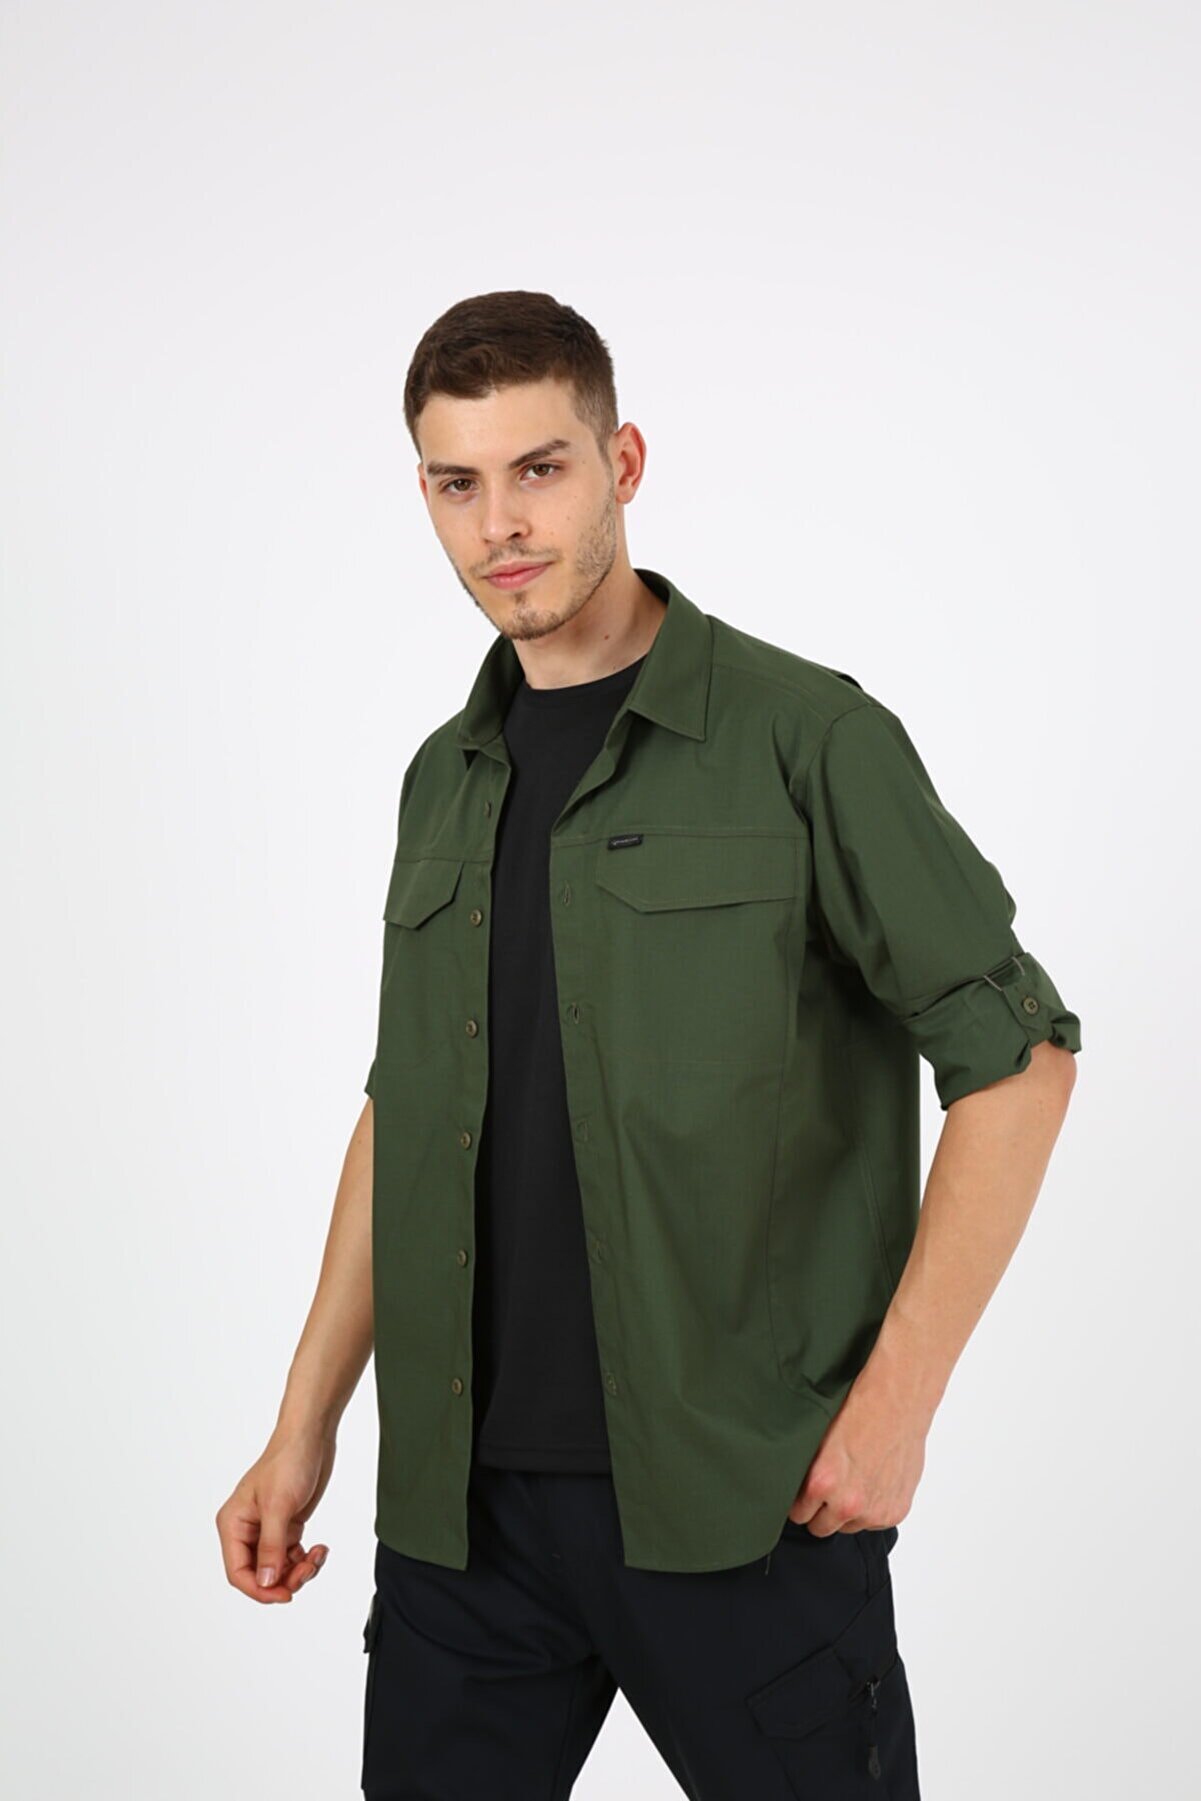 ModaCanel Monel Outdoor Yeşil Tactical Gömlek Taktik Giyim Ripstop Gömlek